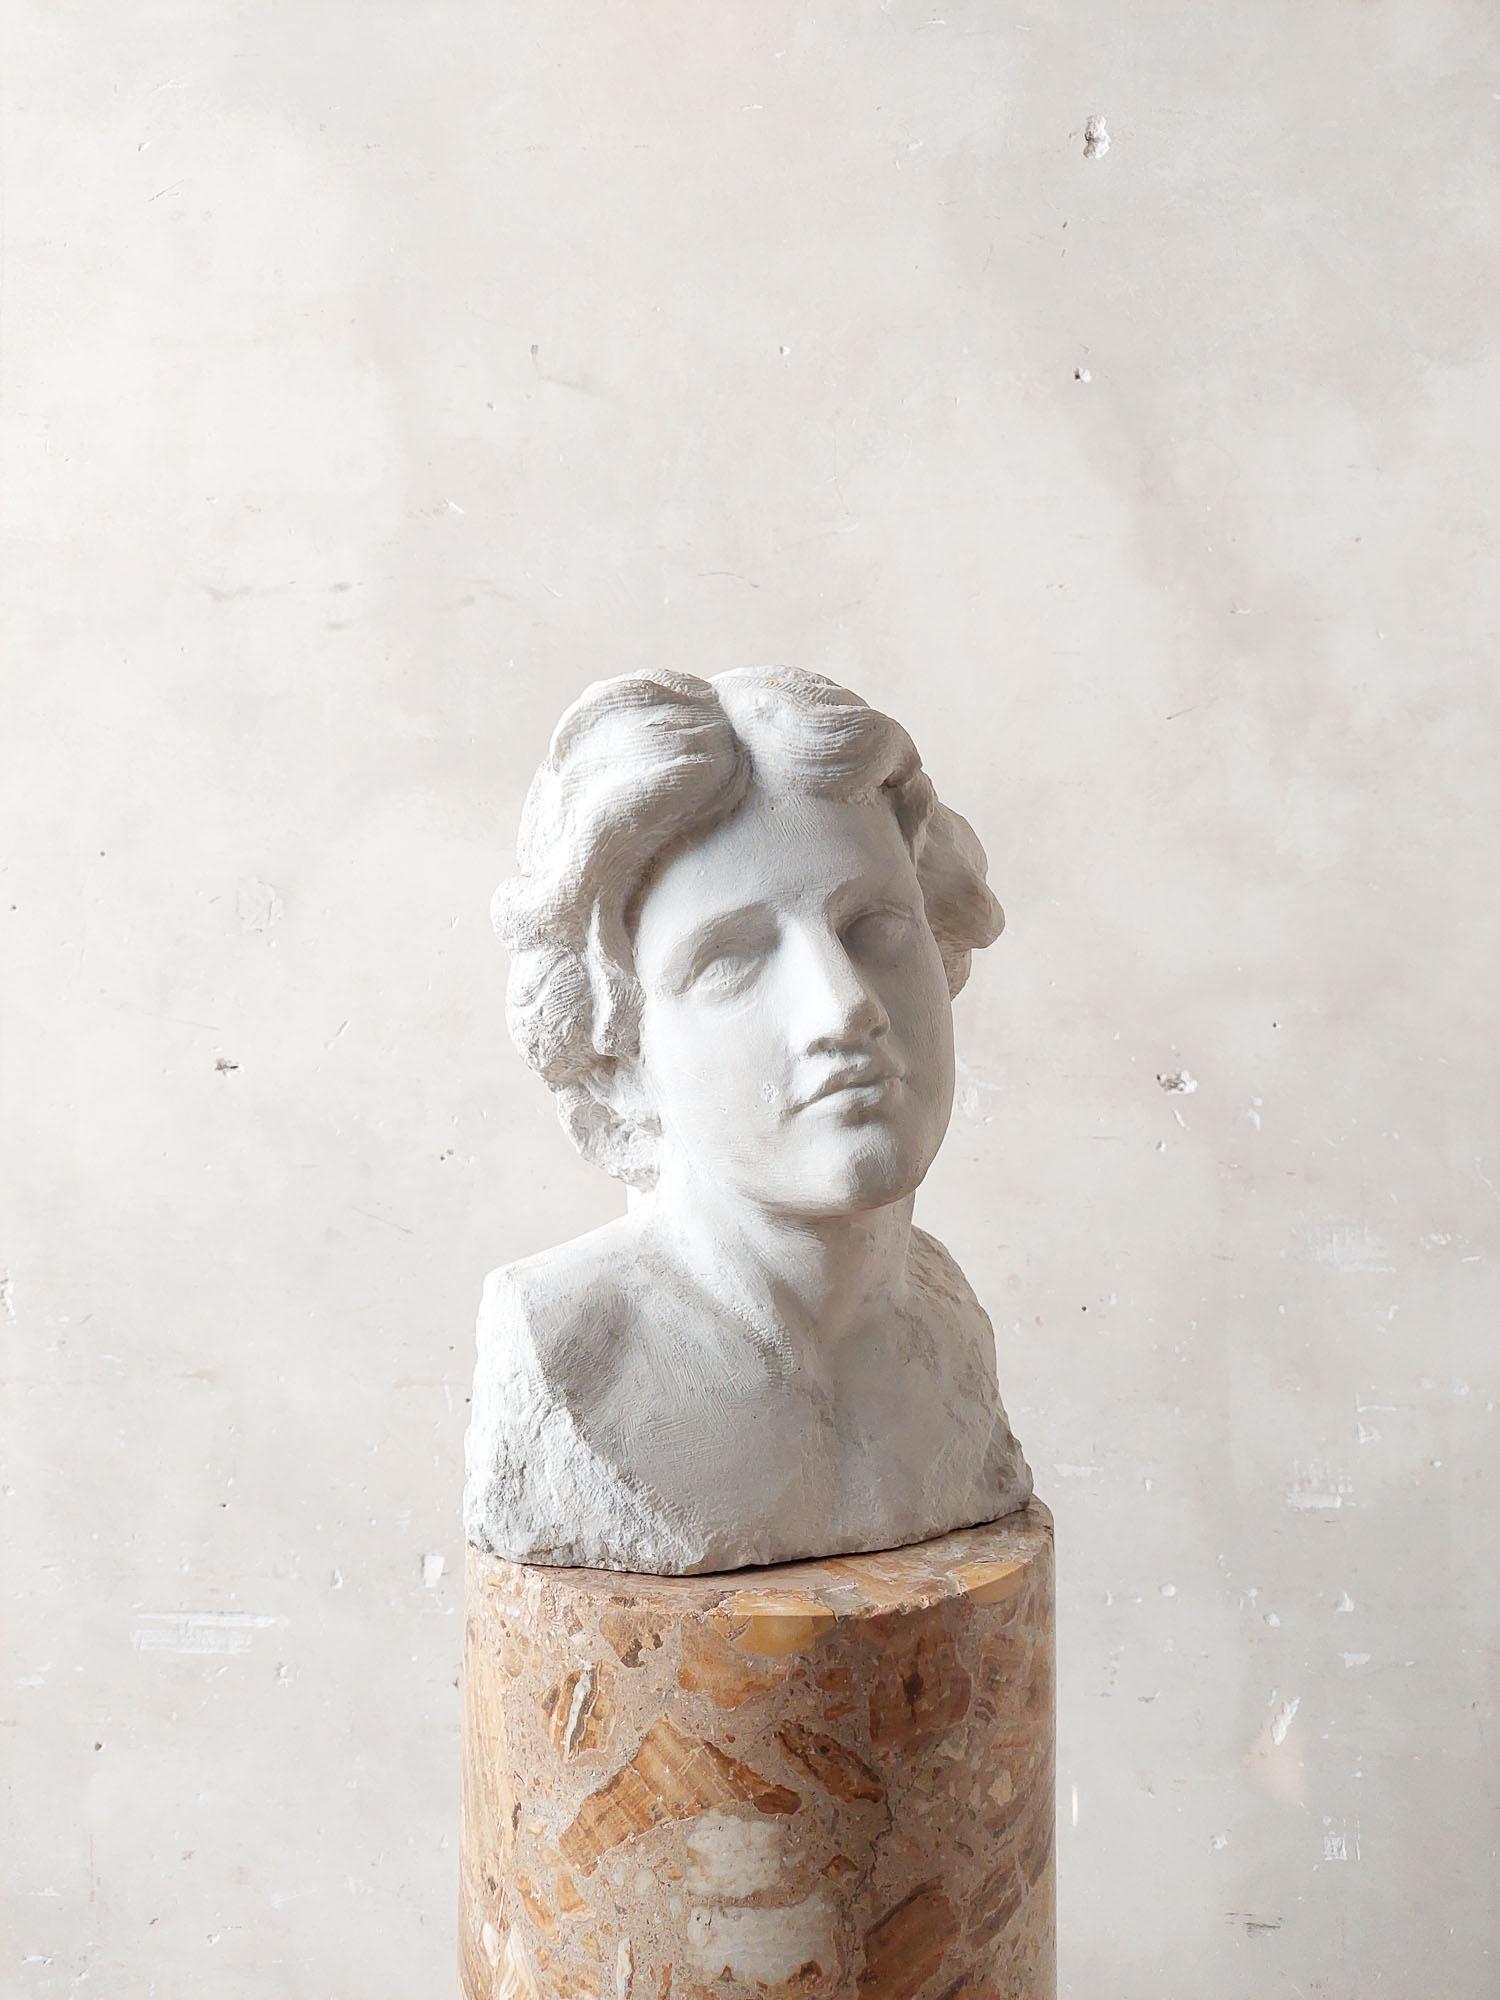 Antike Büste aus Carrara-Marmor, handgeschnitzt, aus weißem Marmor in Statuario-Qualität.

H 47 x B 32 x T 29 cm